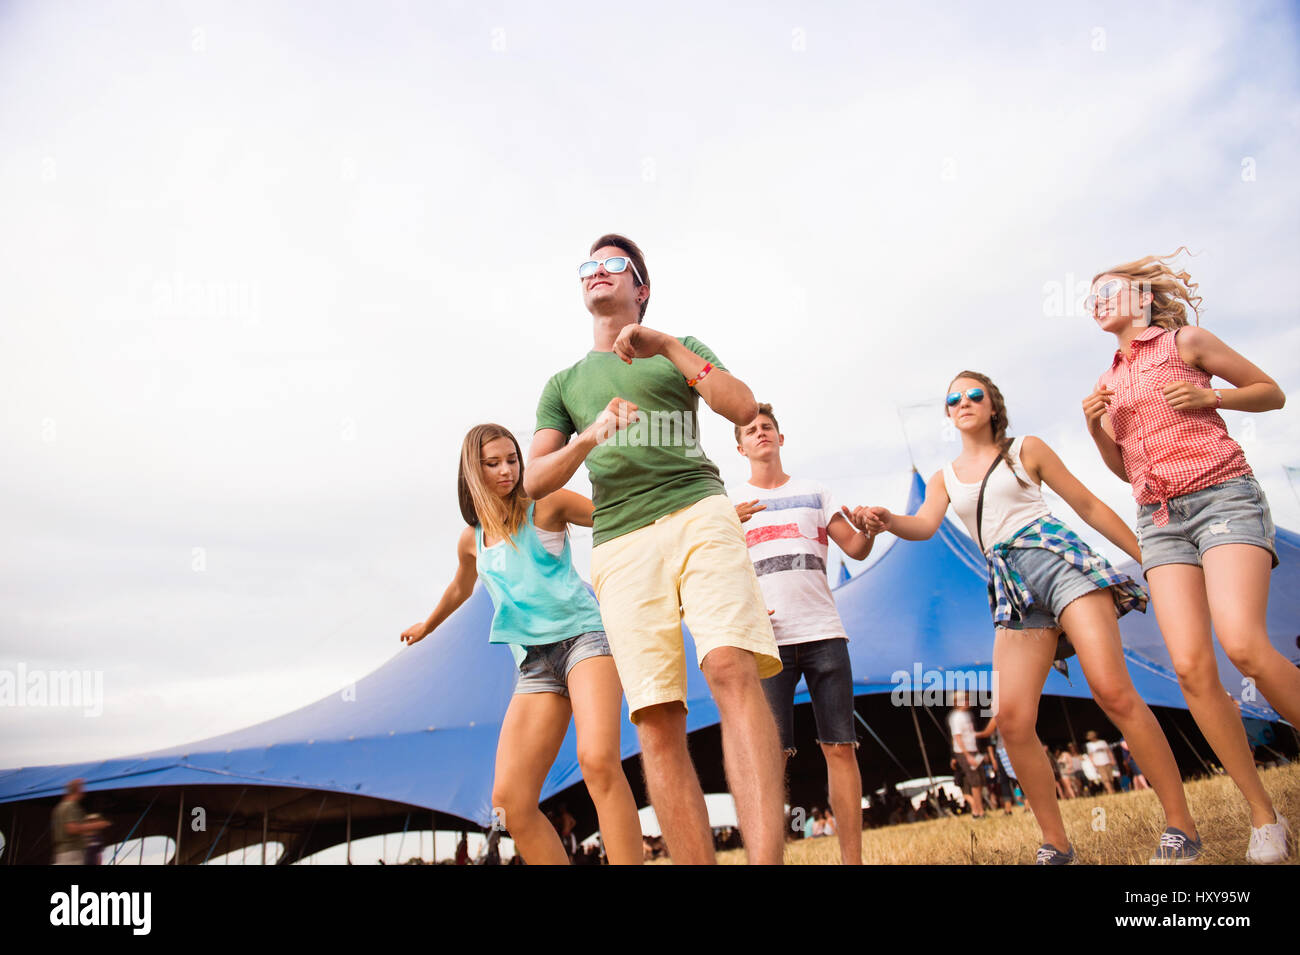 Gruppe von Teenager-Jungen und Mädchen im Sommer-Musikfestival, tanzen vor grossen Zelt, sonnigen Tag Stockfoto